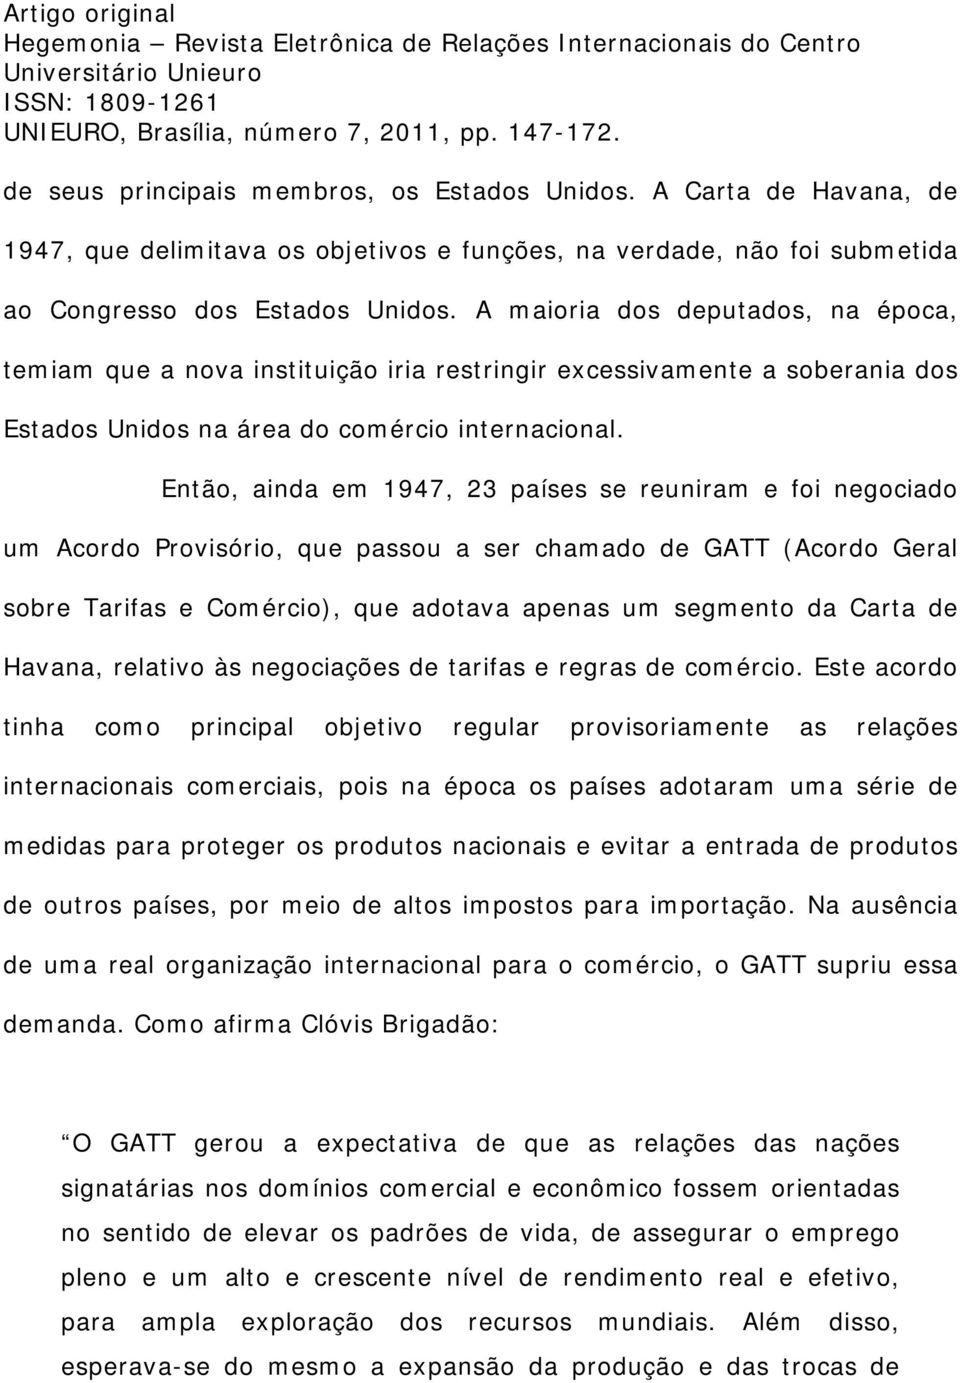 Então, ainda em 1947, 23 países se reuniram e foi negociado um Acordo Provisório, que passou a ser chamado de GATT (Acordo Geral sobre Tarifas e Comércio), que adotava apenas um segmento da Carta de